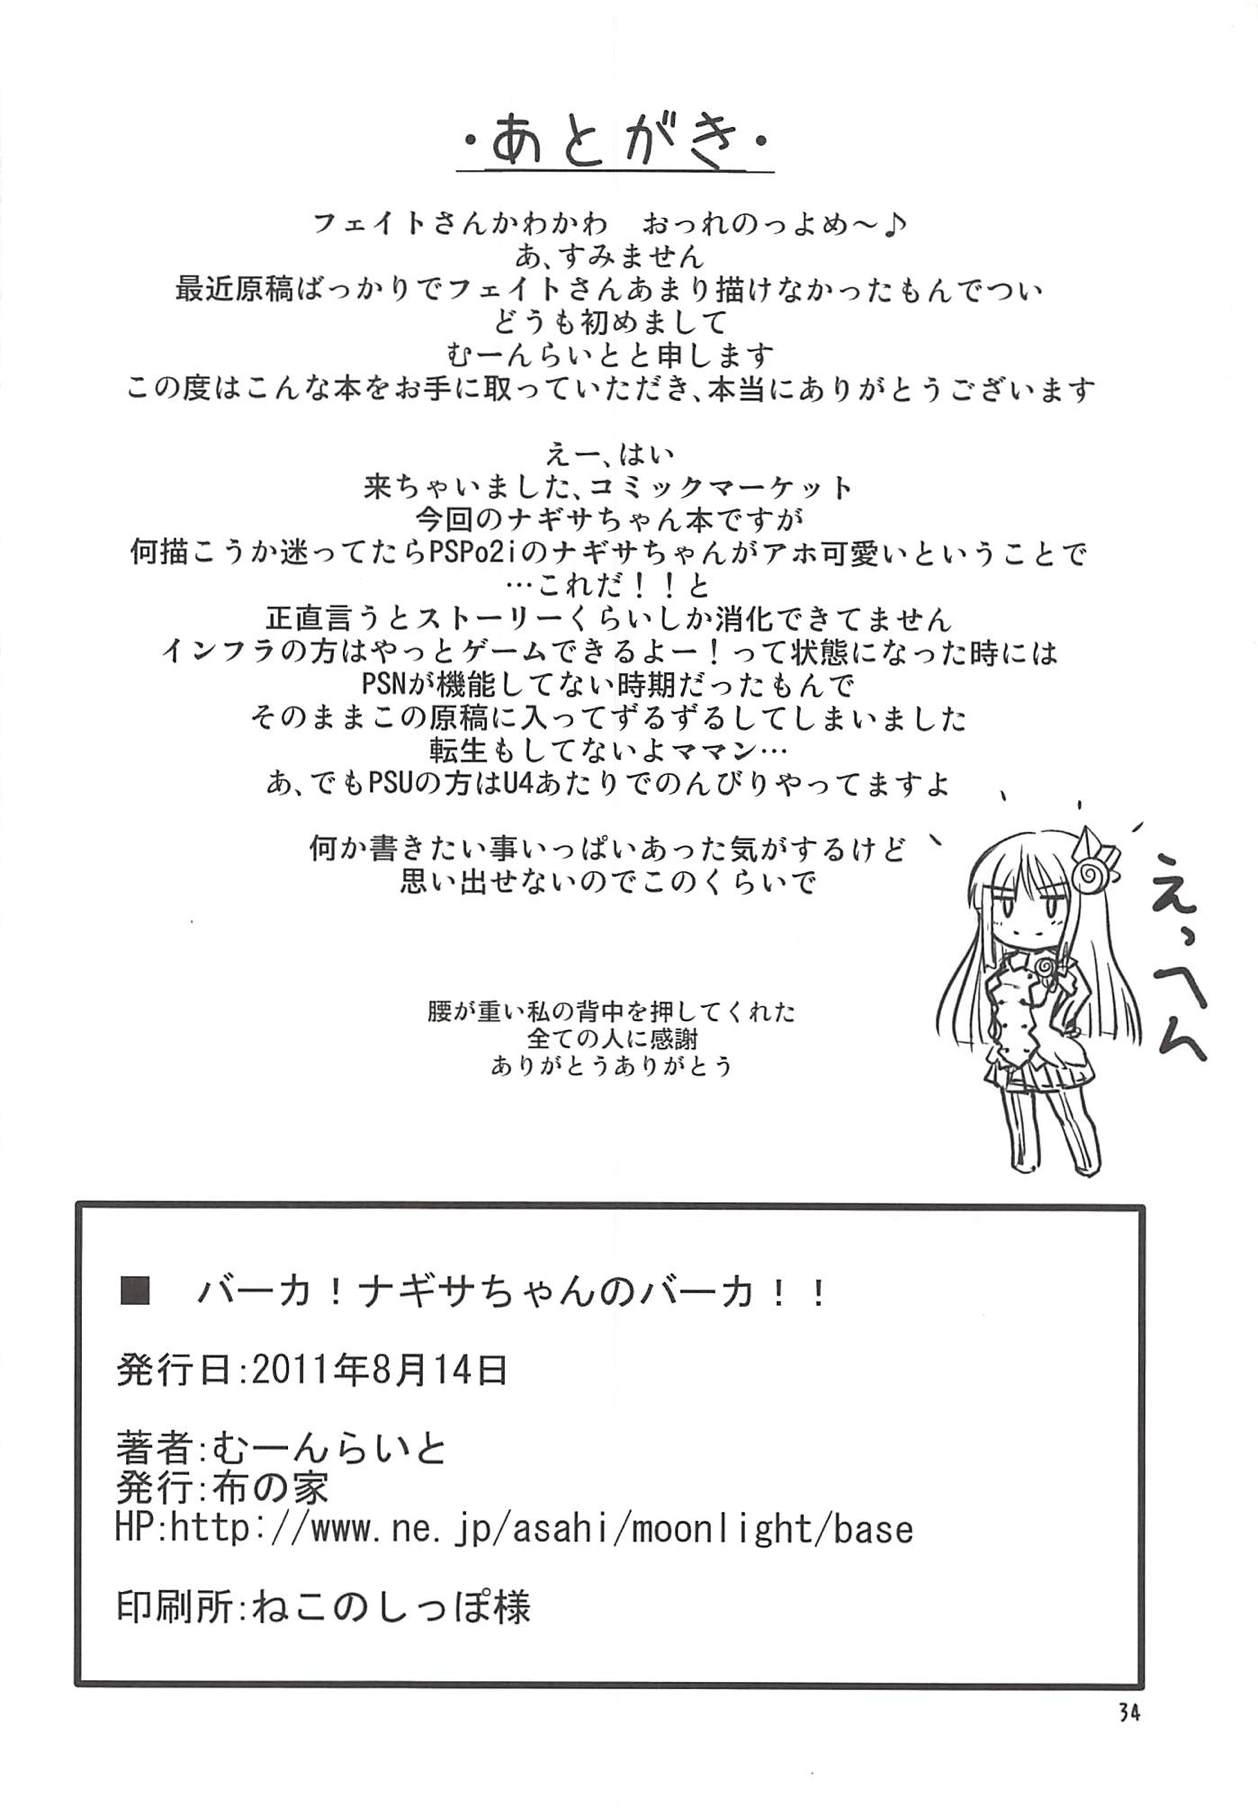 Hard Core Free Porn Baka! Nagisa-chan no Baka!! - Phantasy star portable 2 Stretching - Page 33